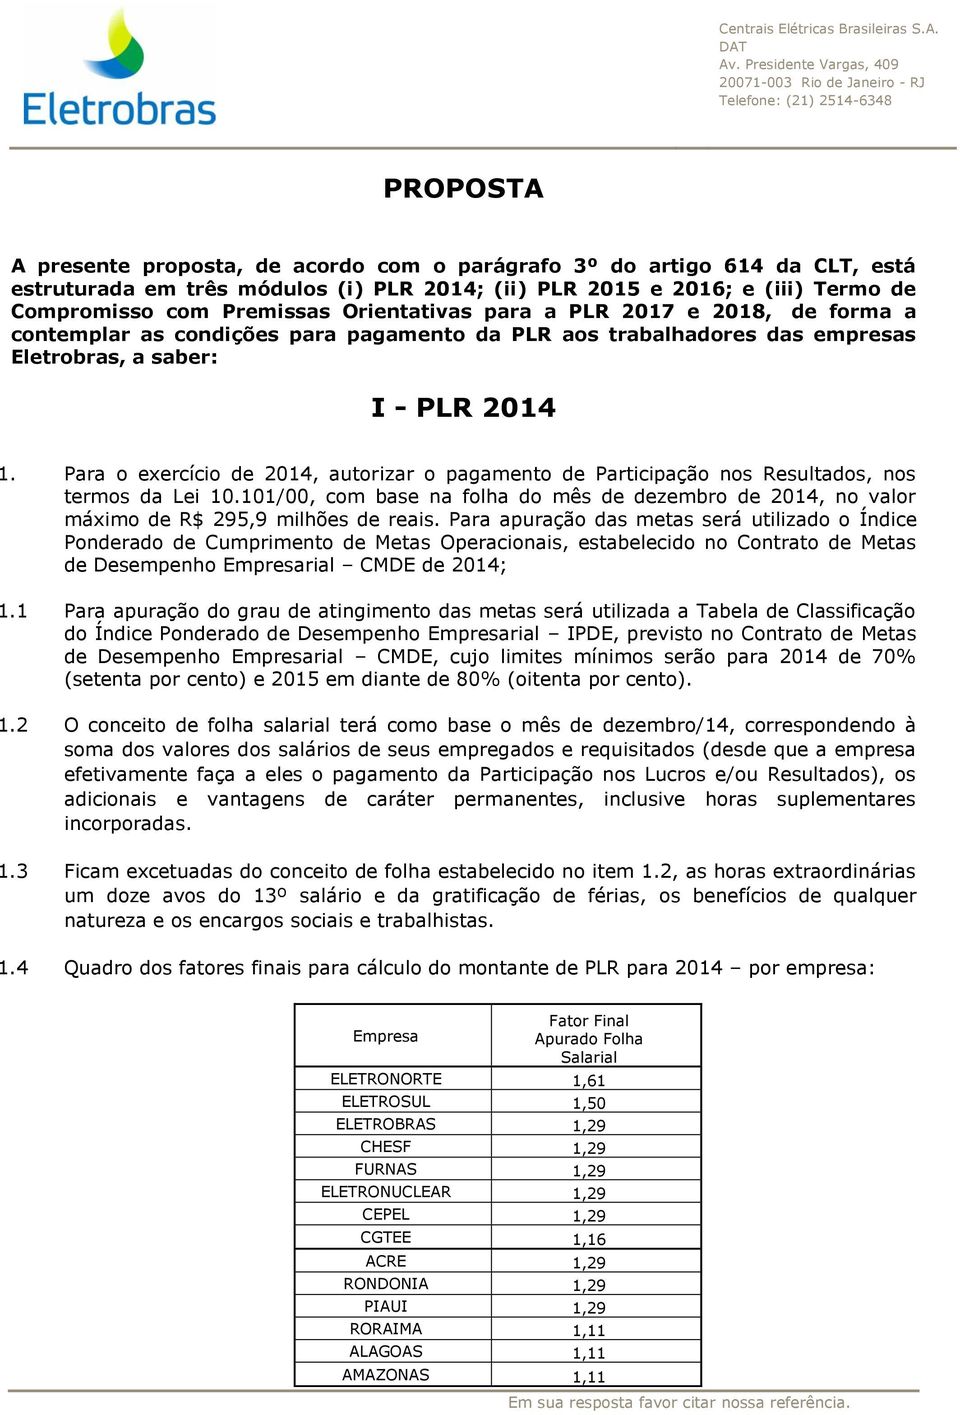 Para o exercício de 2014, autorizar o pagamento de Participação nos Resultados, nos termos da Lei 10.101/00, com base na folha do mês de dezembro de 2014, no valor máximo de R$ 295,9 milhões de reais.